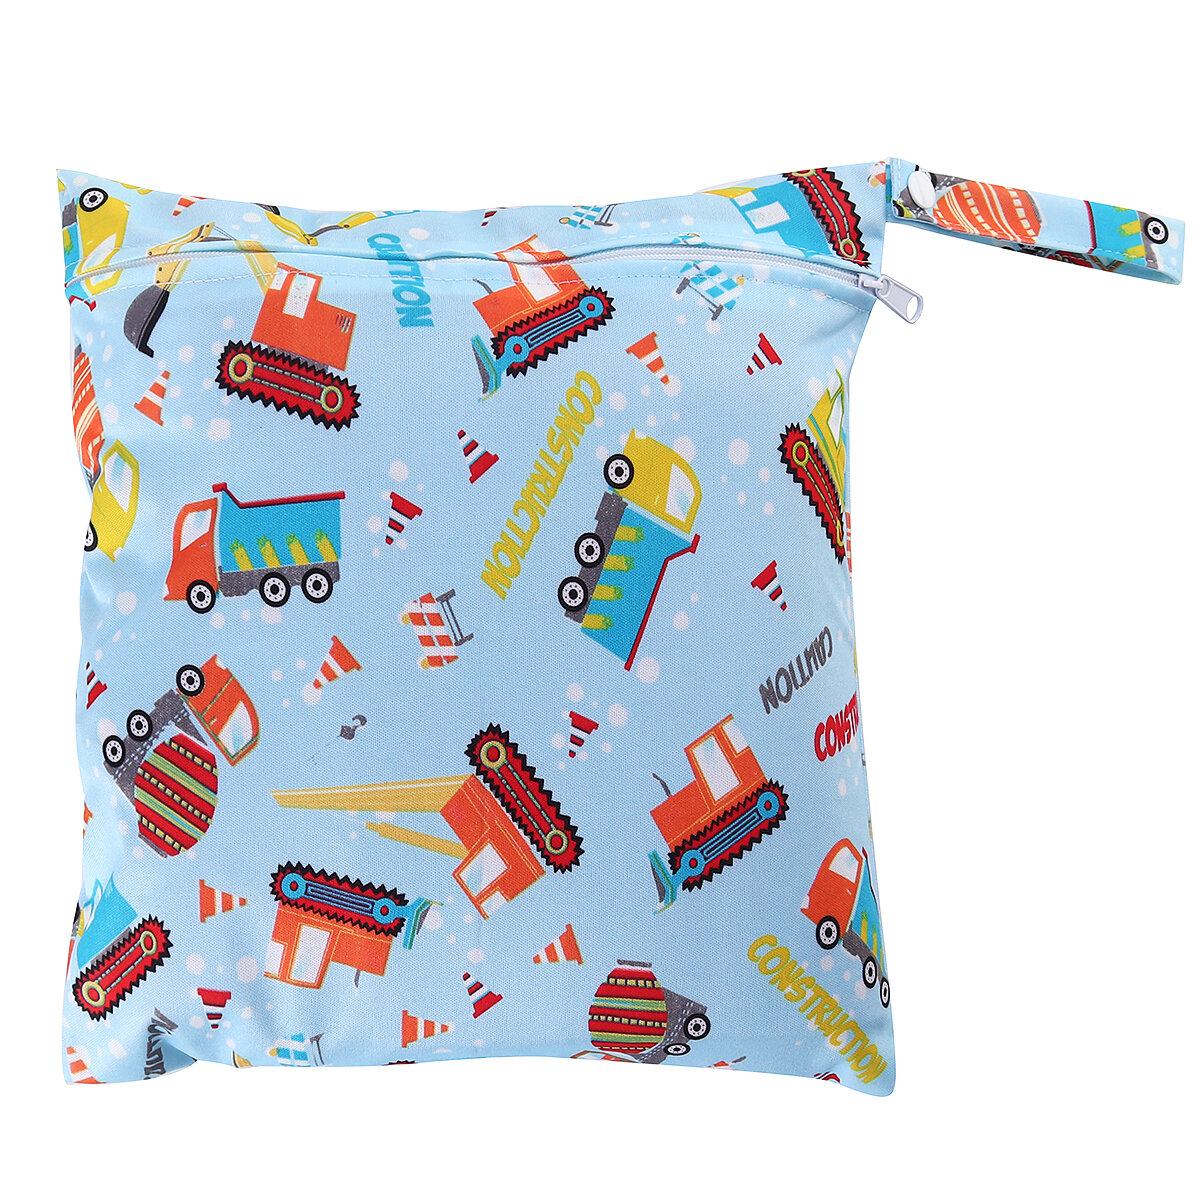 Fraldas impermeáveis reutilizáveis para bebês, bolsas de fraldas portáteis com duplo bolso para fraldas molhadas e secas